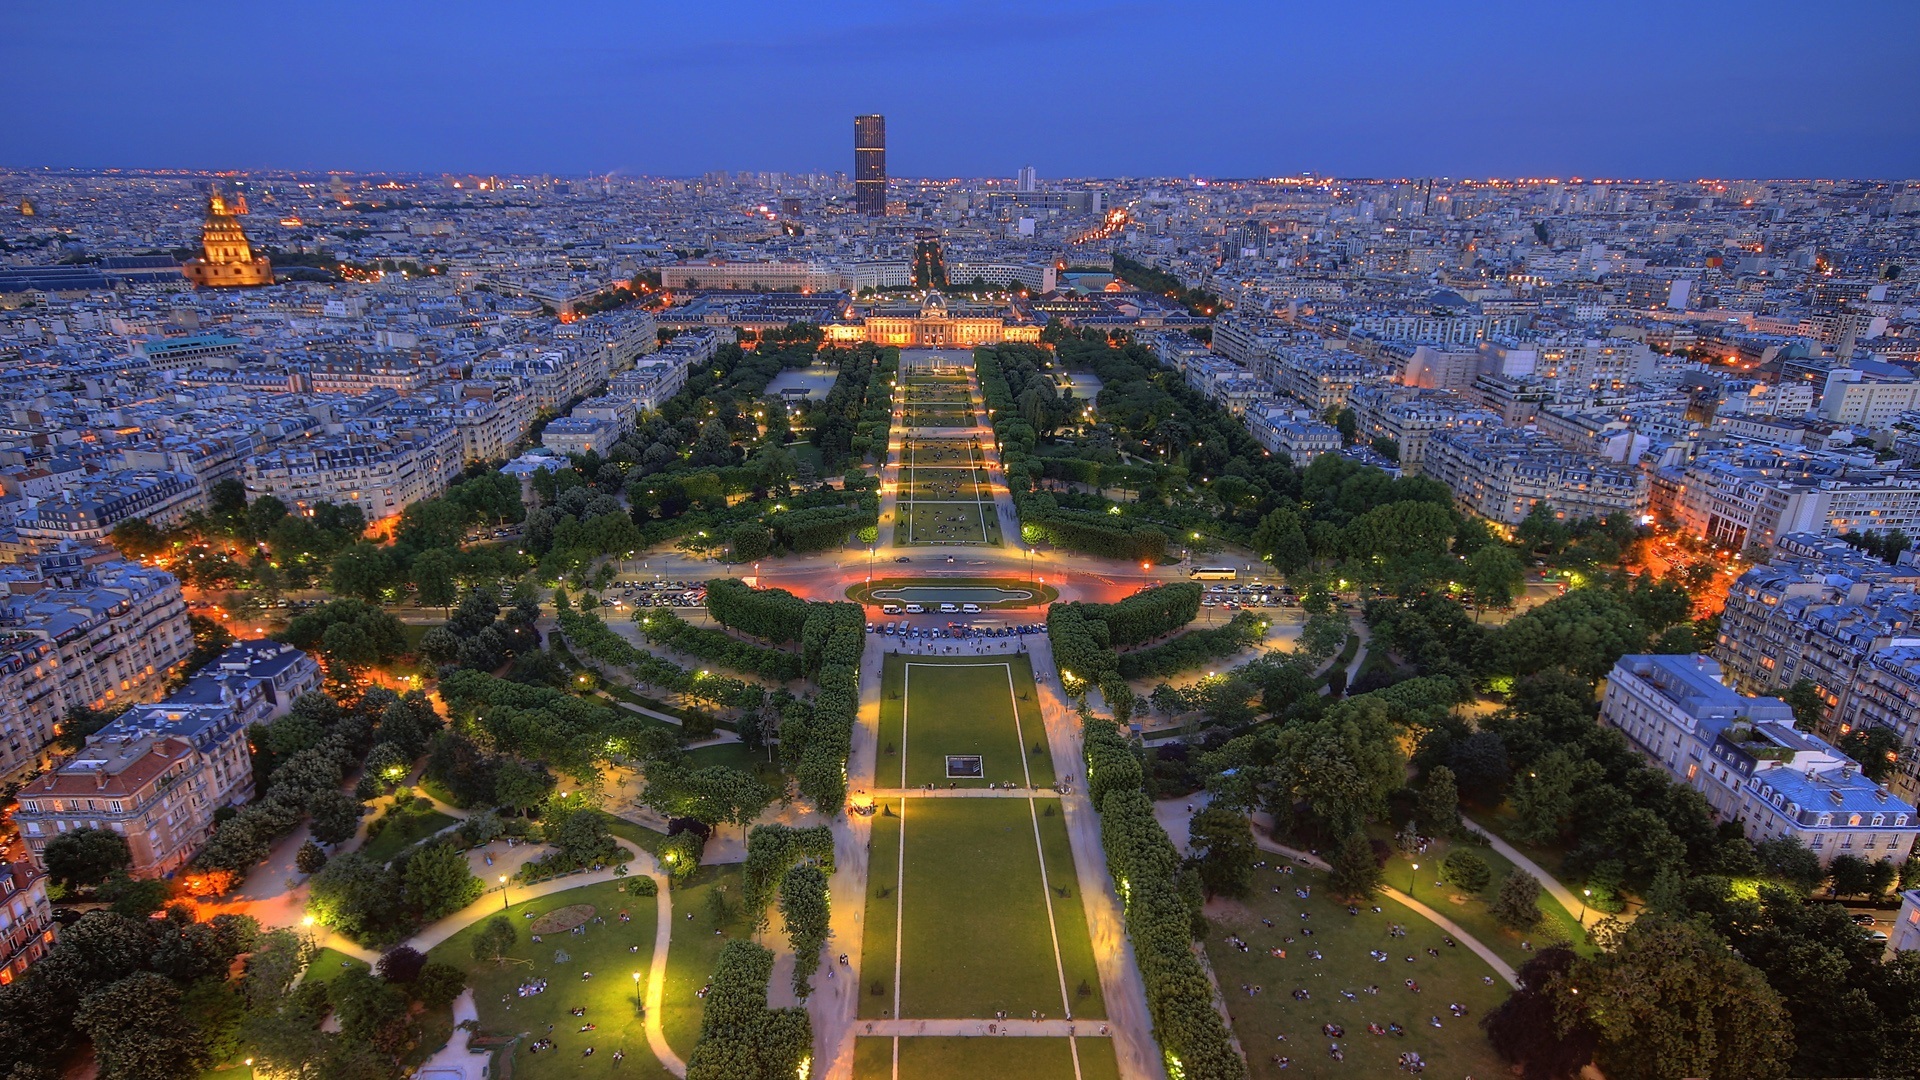 Скачать картинку Города, Сделано Человеком, Париж в телефон бесплатно.